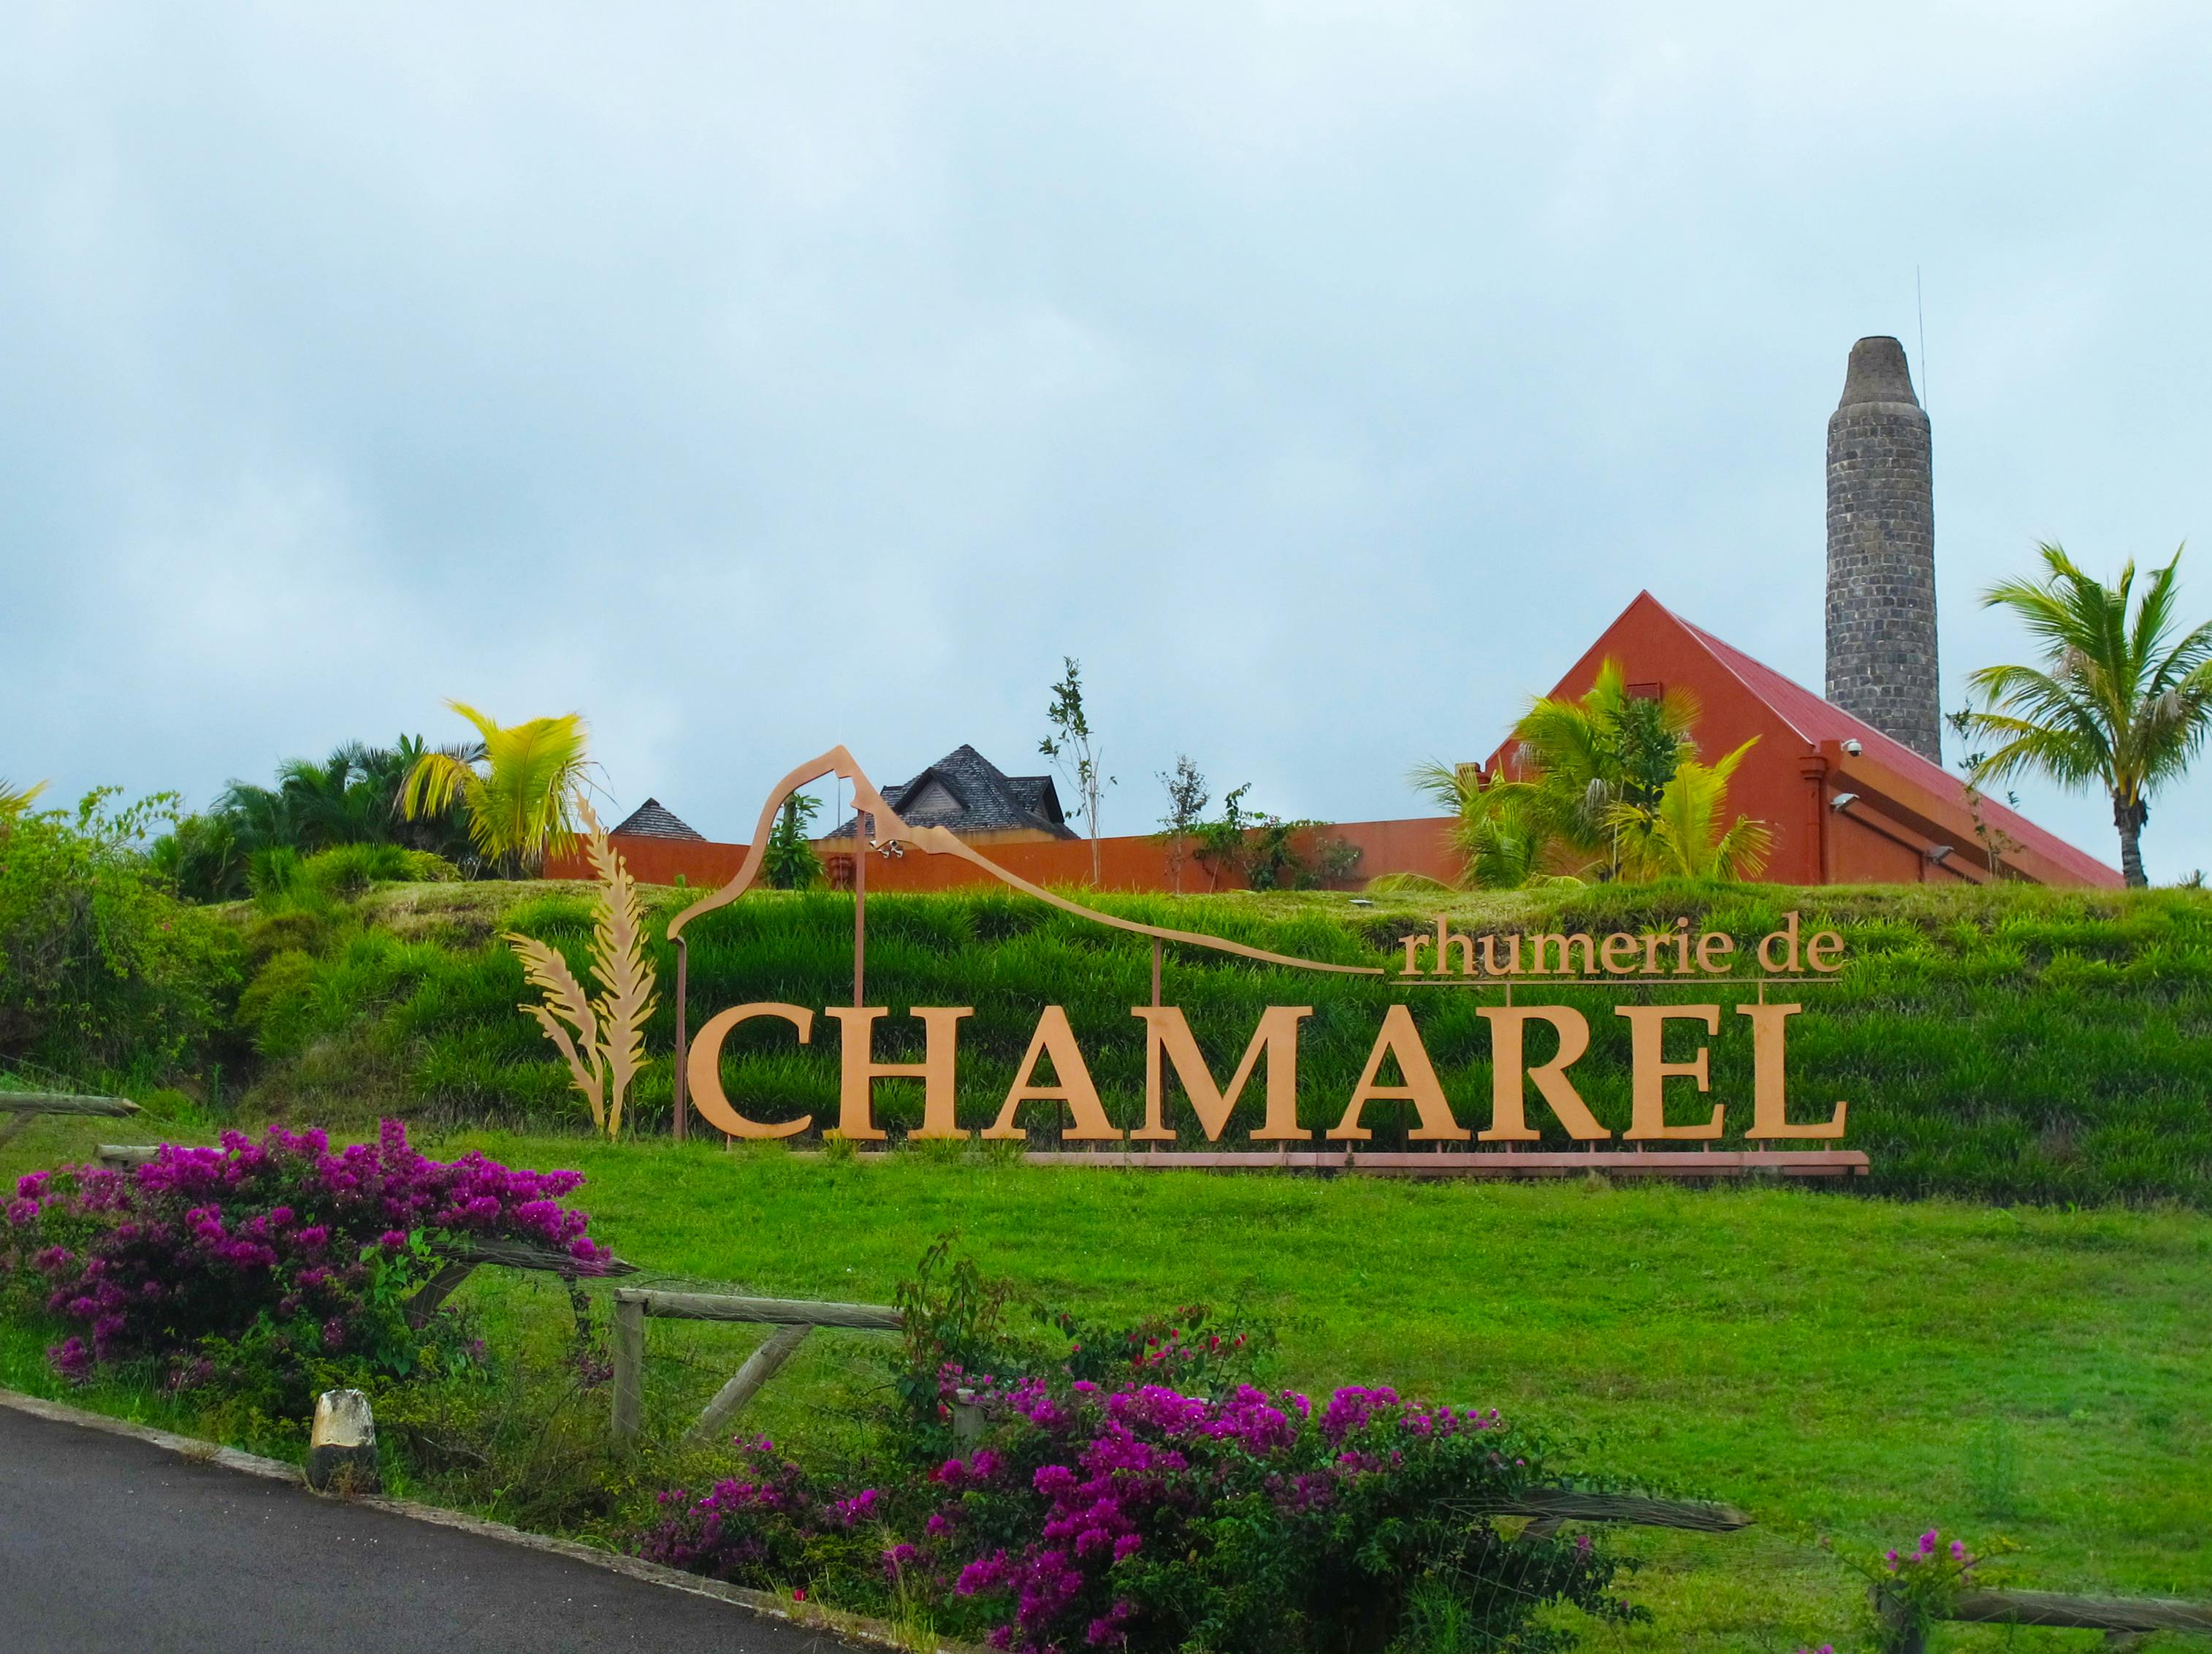 Bilet wstępu do Rhumerie de Chamarel